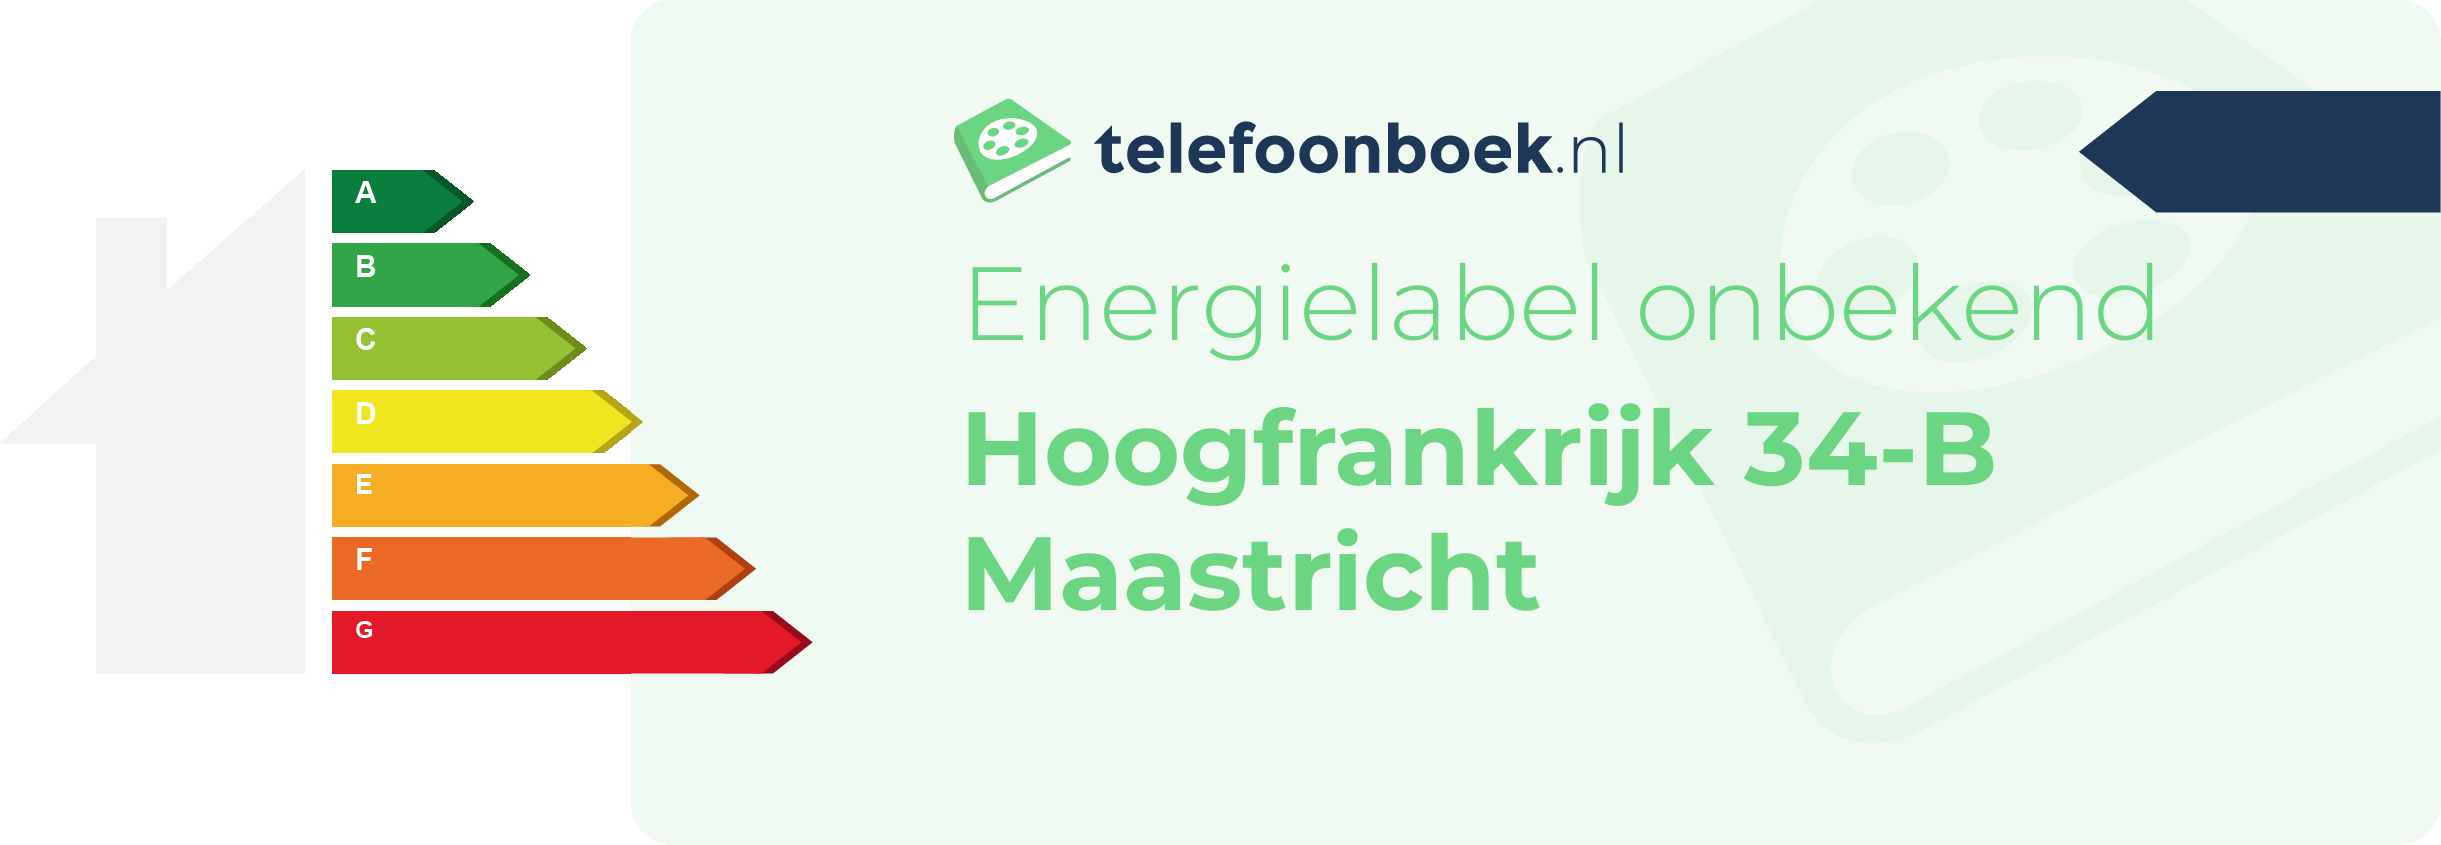 Energielabel Hoogfrankrijk 34-B Maastricht